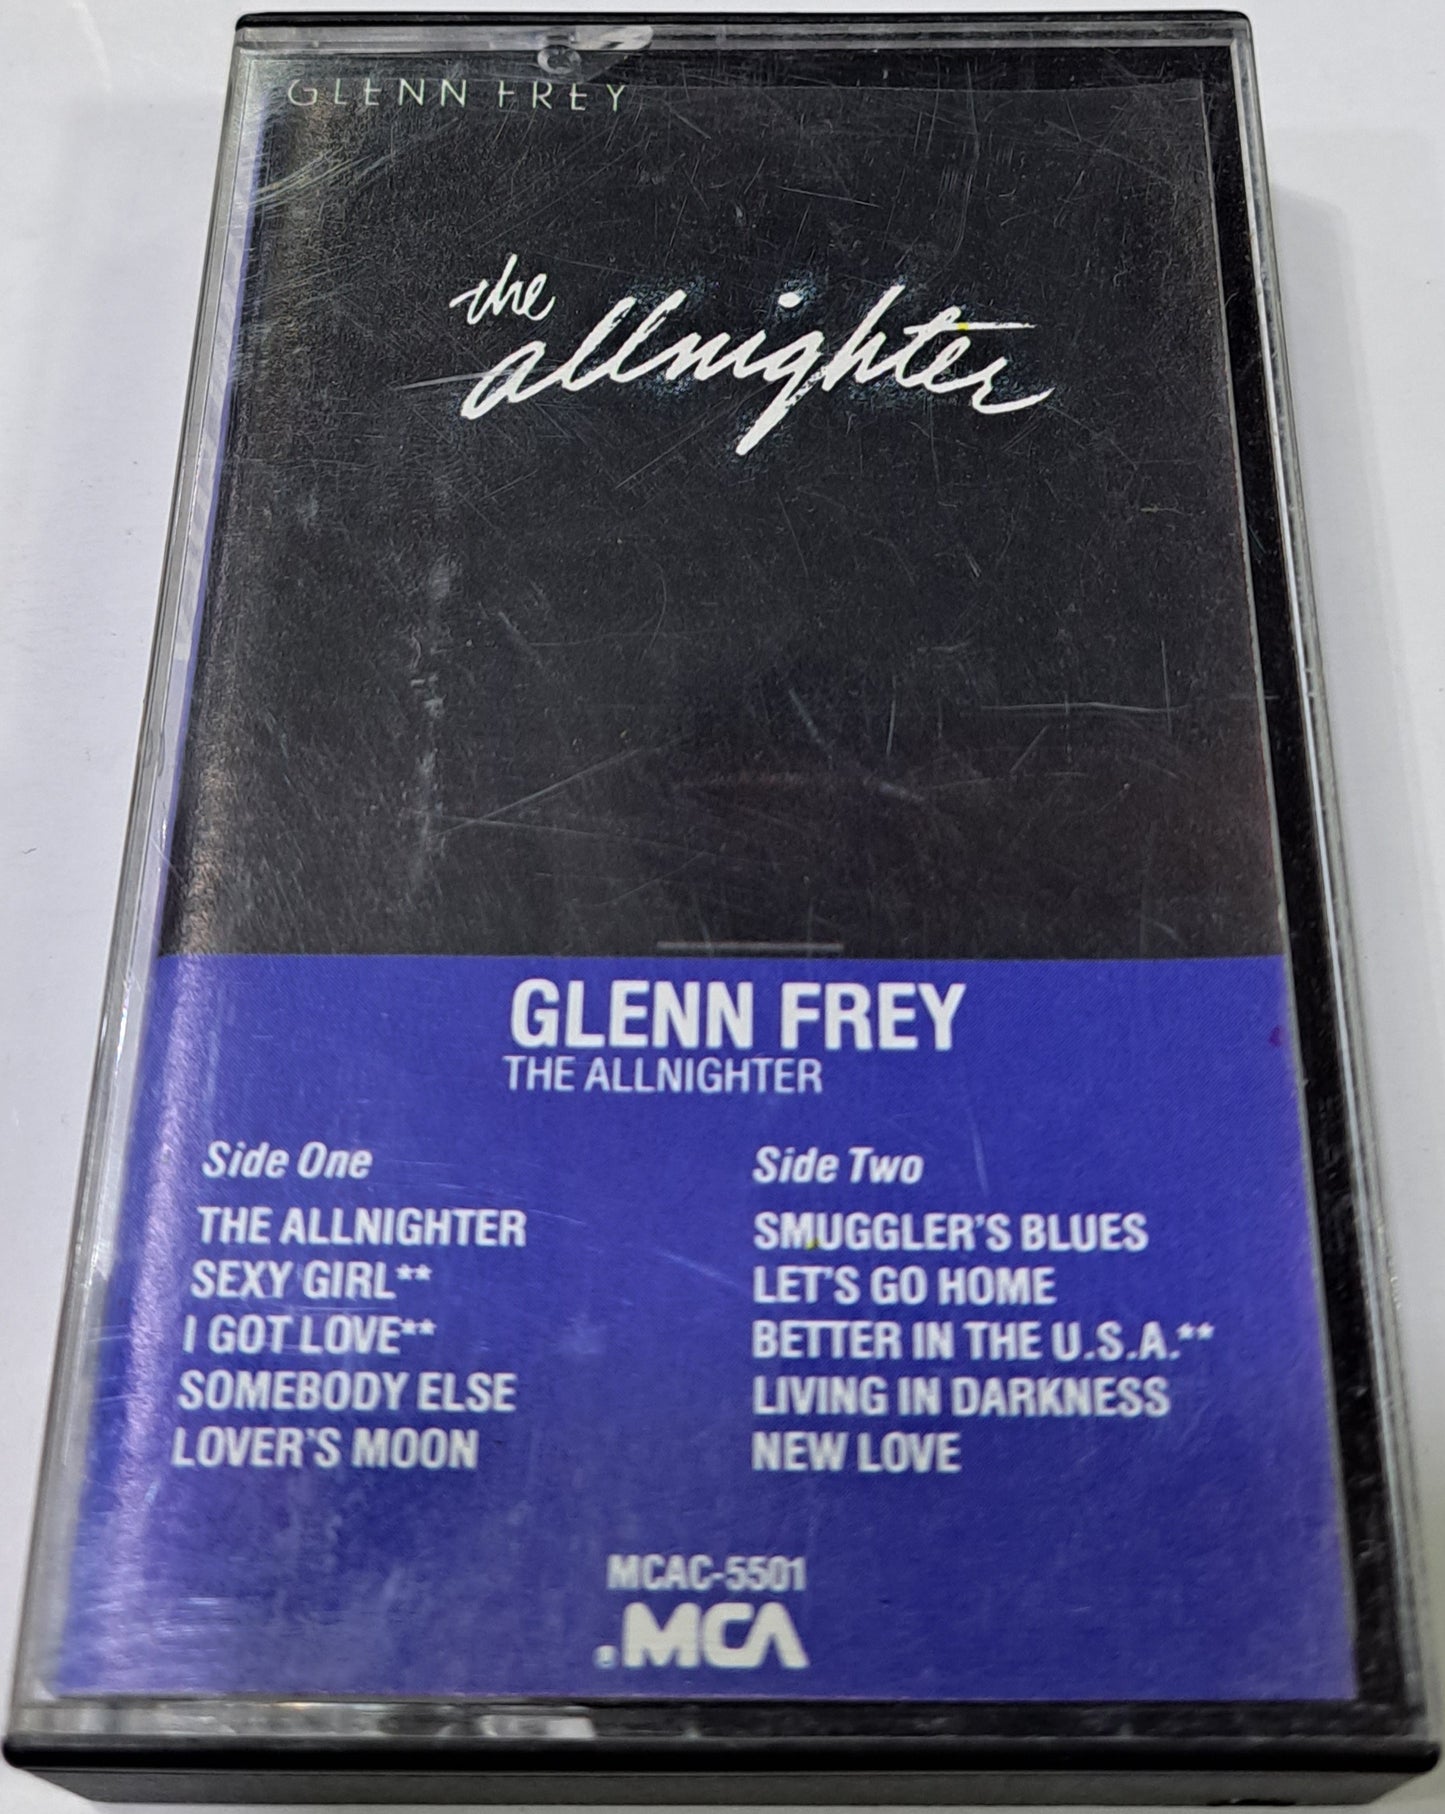 GLENN FREY - THE ALLNIGHTER CASSETTE